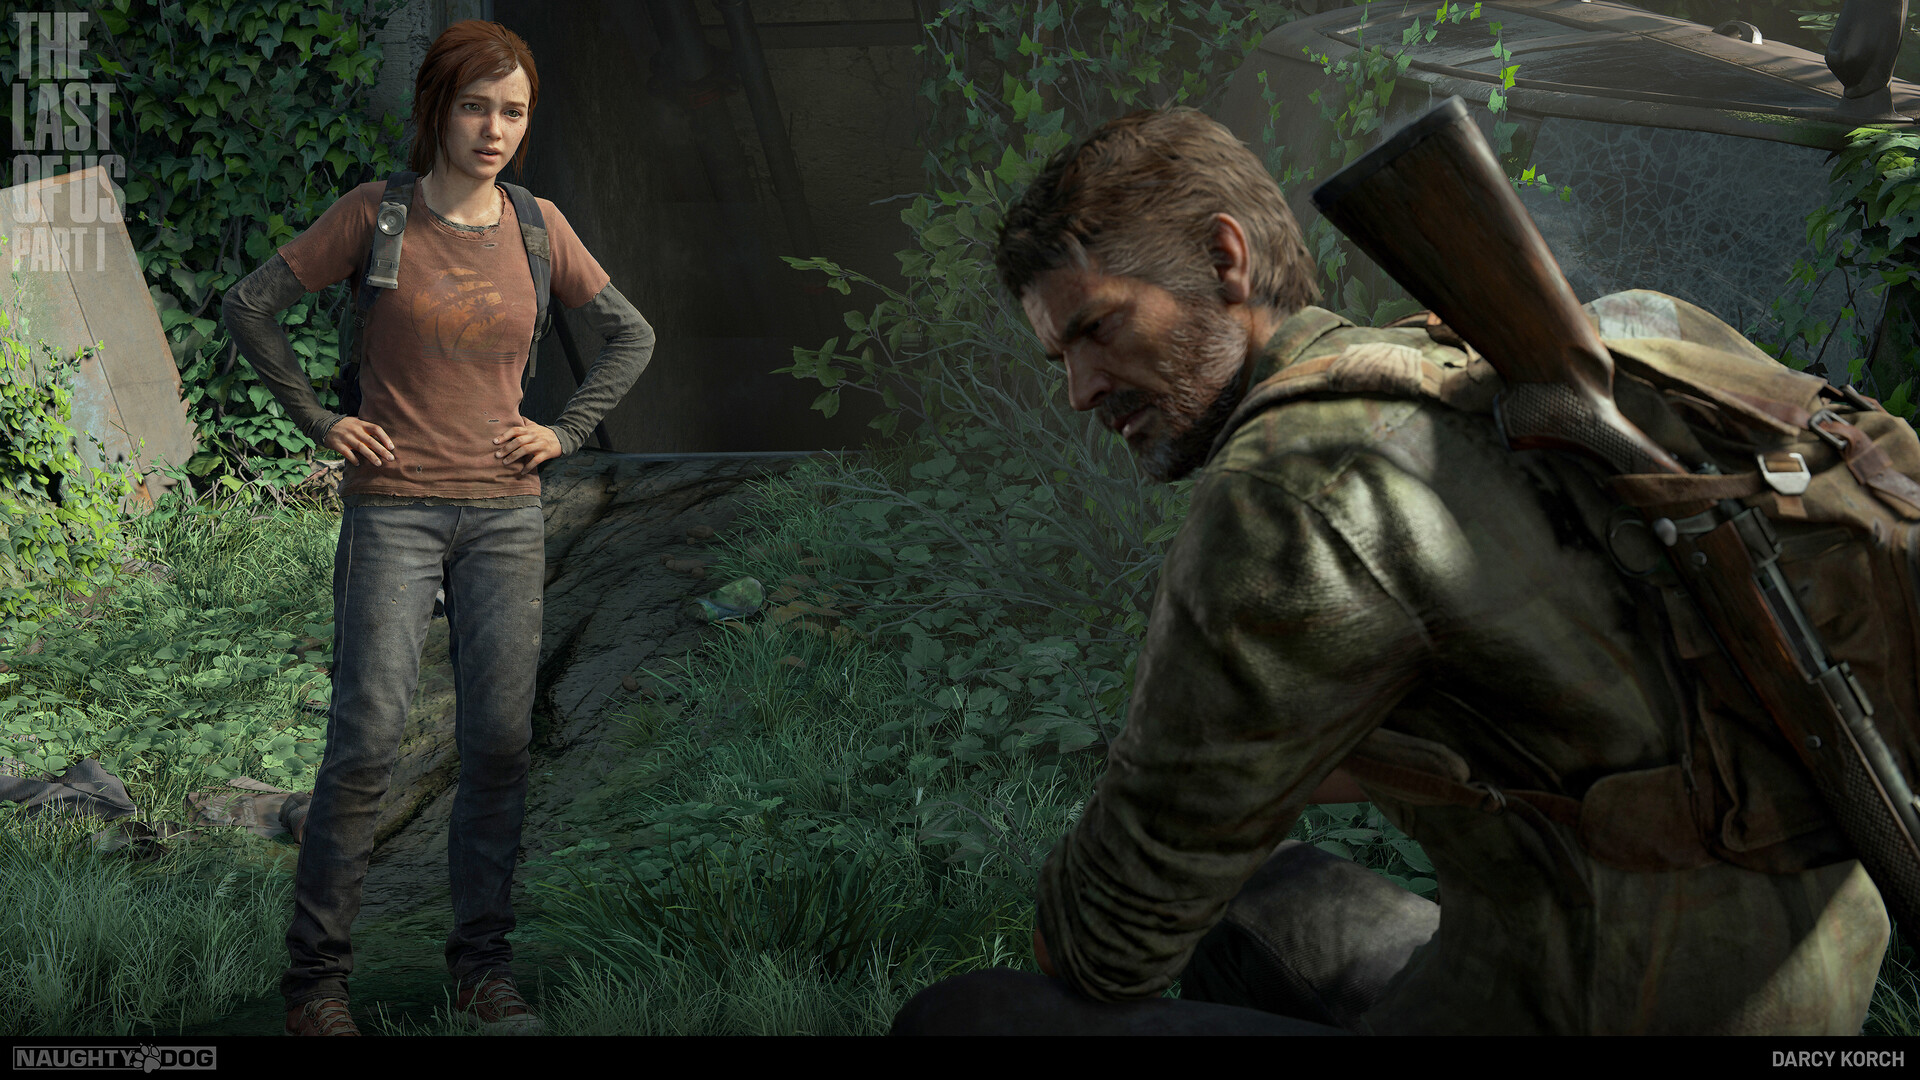 Artista une cosplay de The Last of Us, educação e responsabilidade ambiental